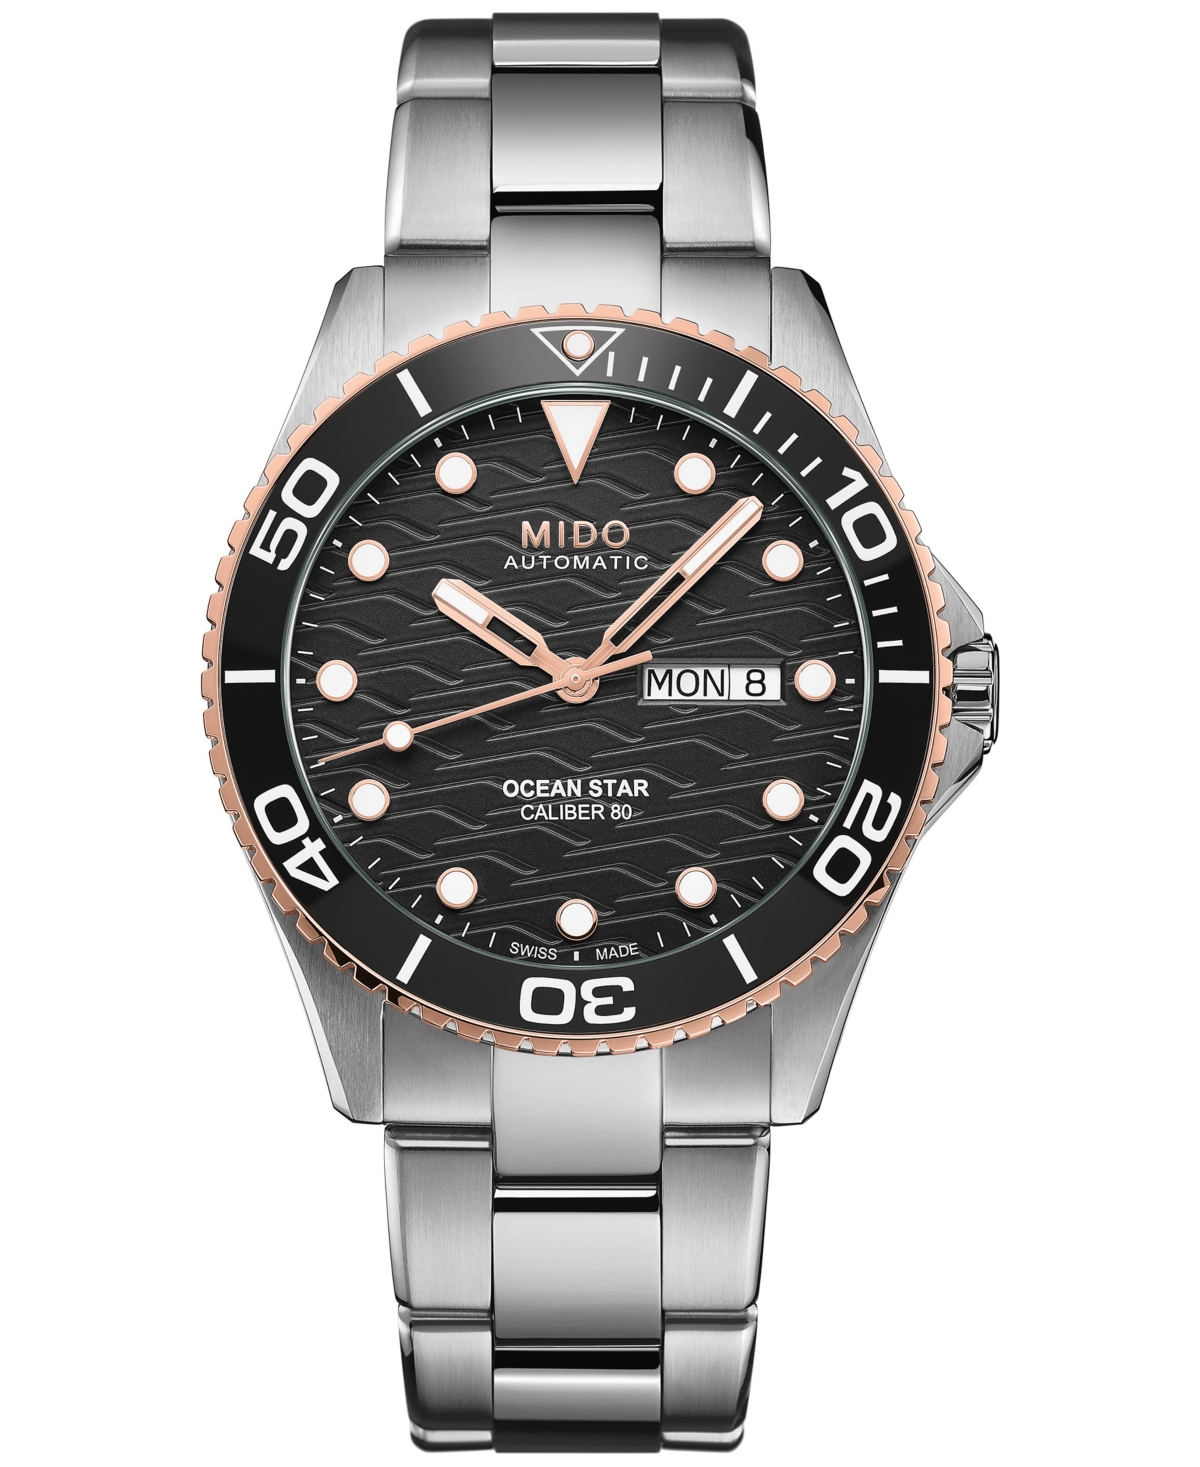 Unisex Swiss Automatic Ocean Star 200 Stainless Steel Bracelet Watch 44mm - Black